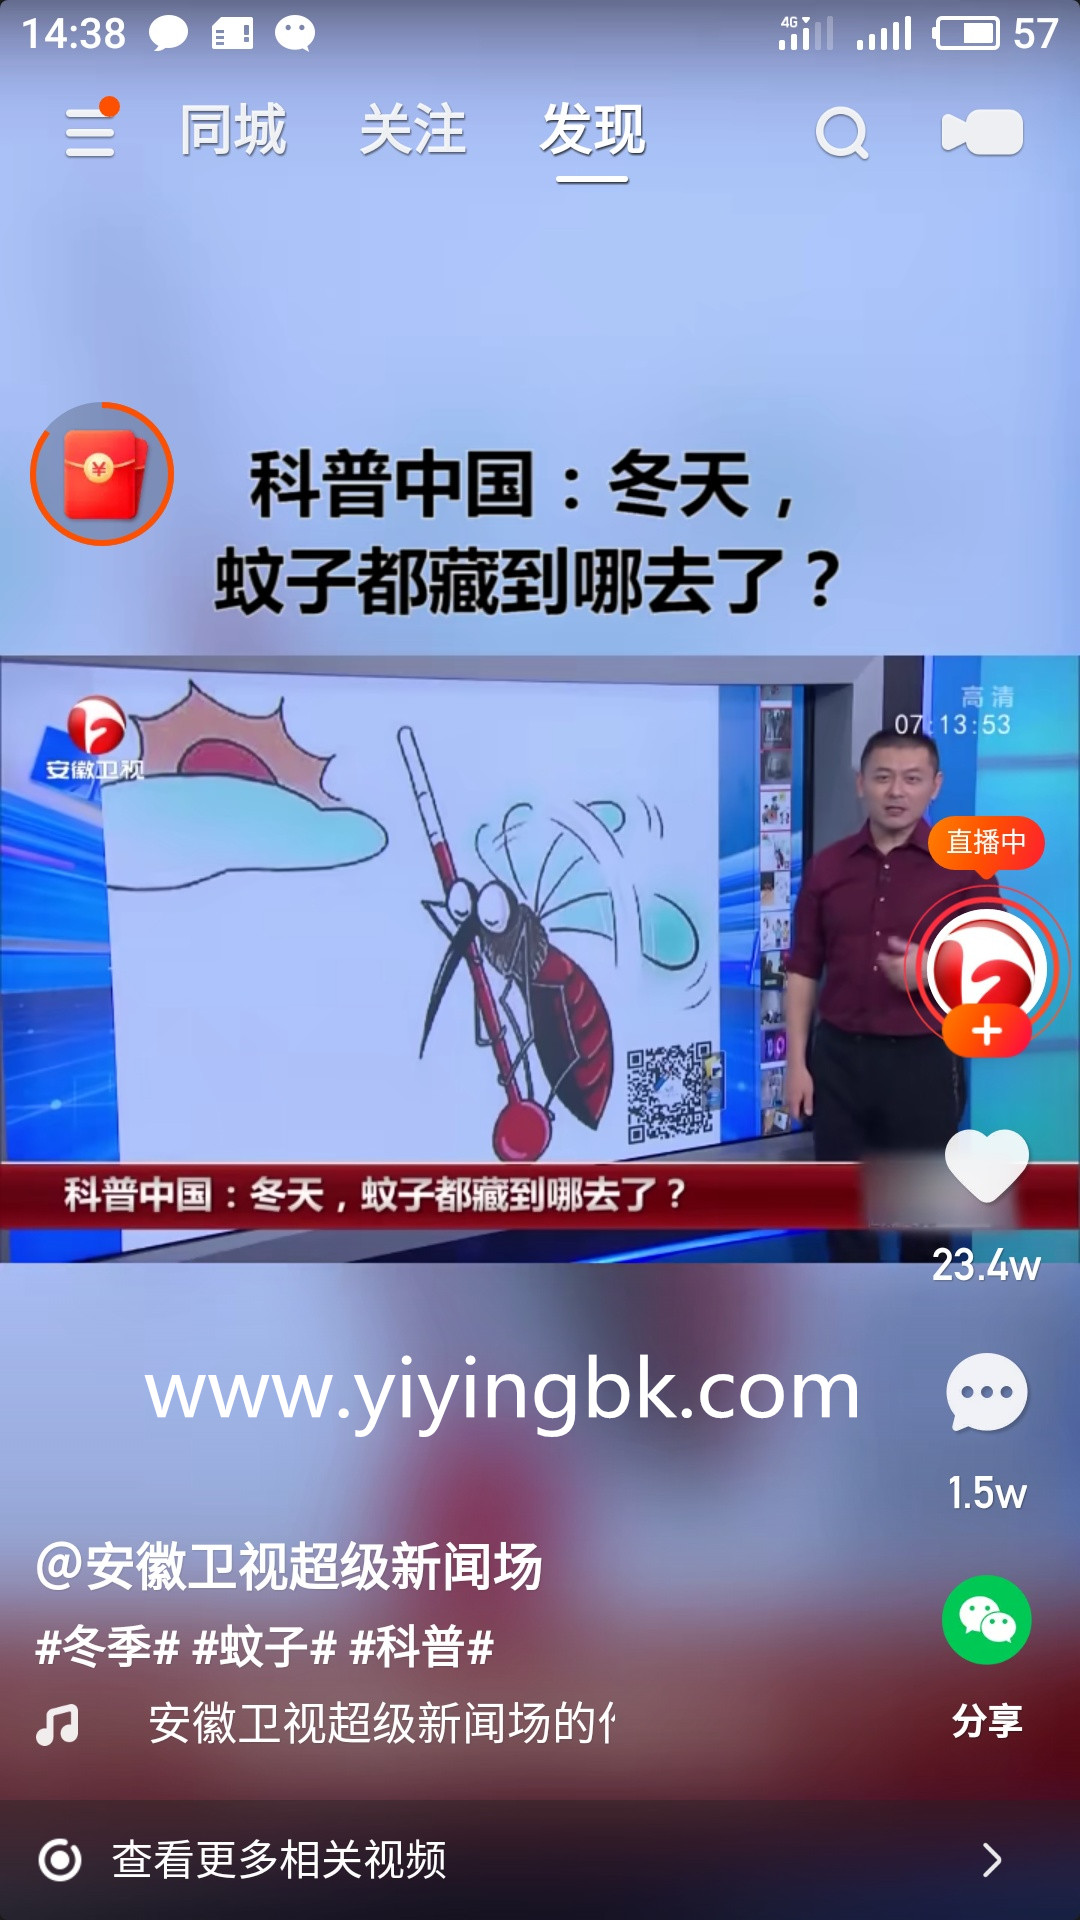 每天看视频免费领现金红包，提现微信和支付宝秒到账。www.yiyingbk.com